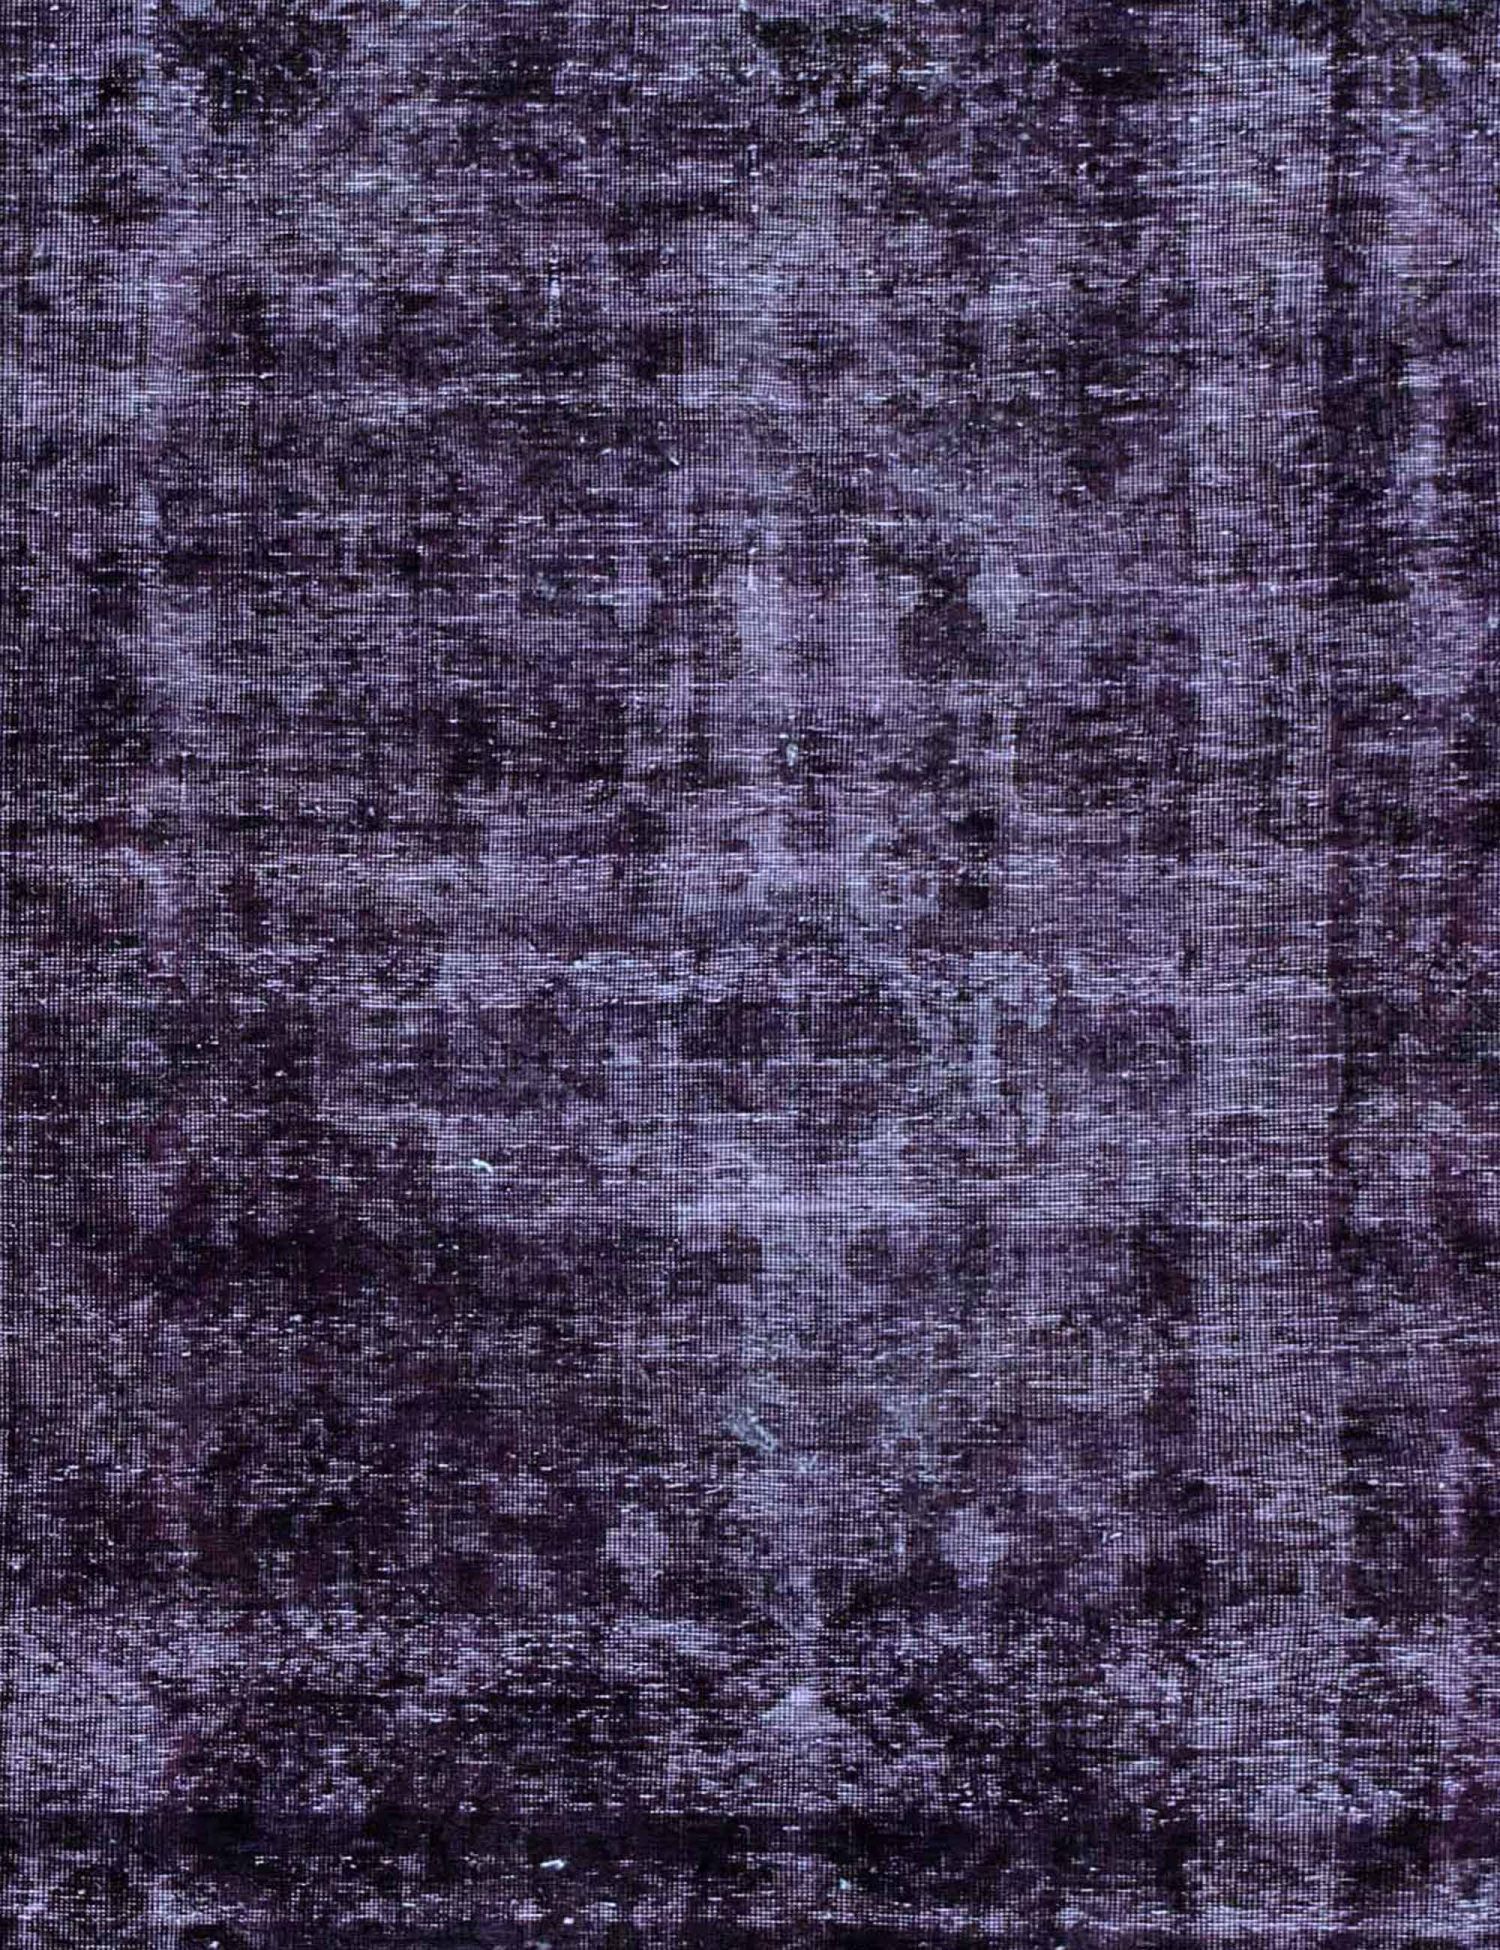 Persian Vintage Carpet  purple  <br/>284 x 190 cm